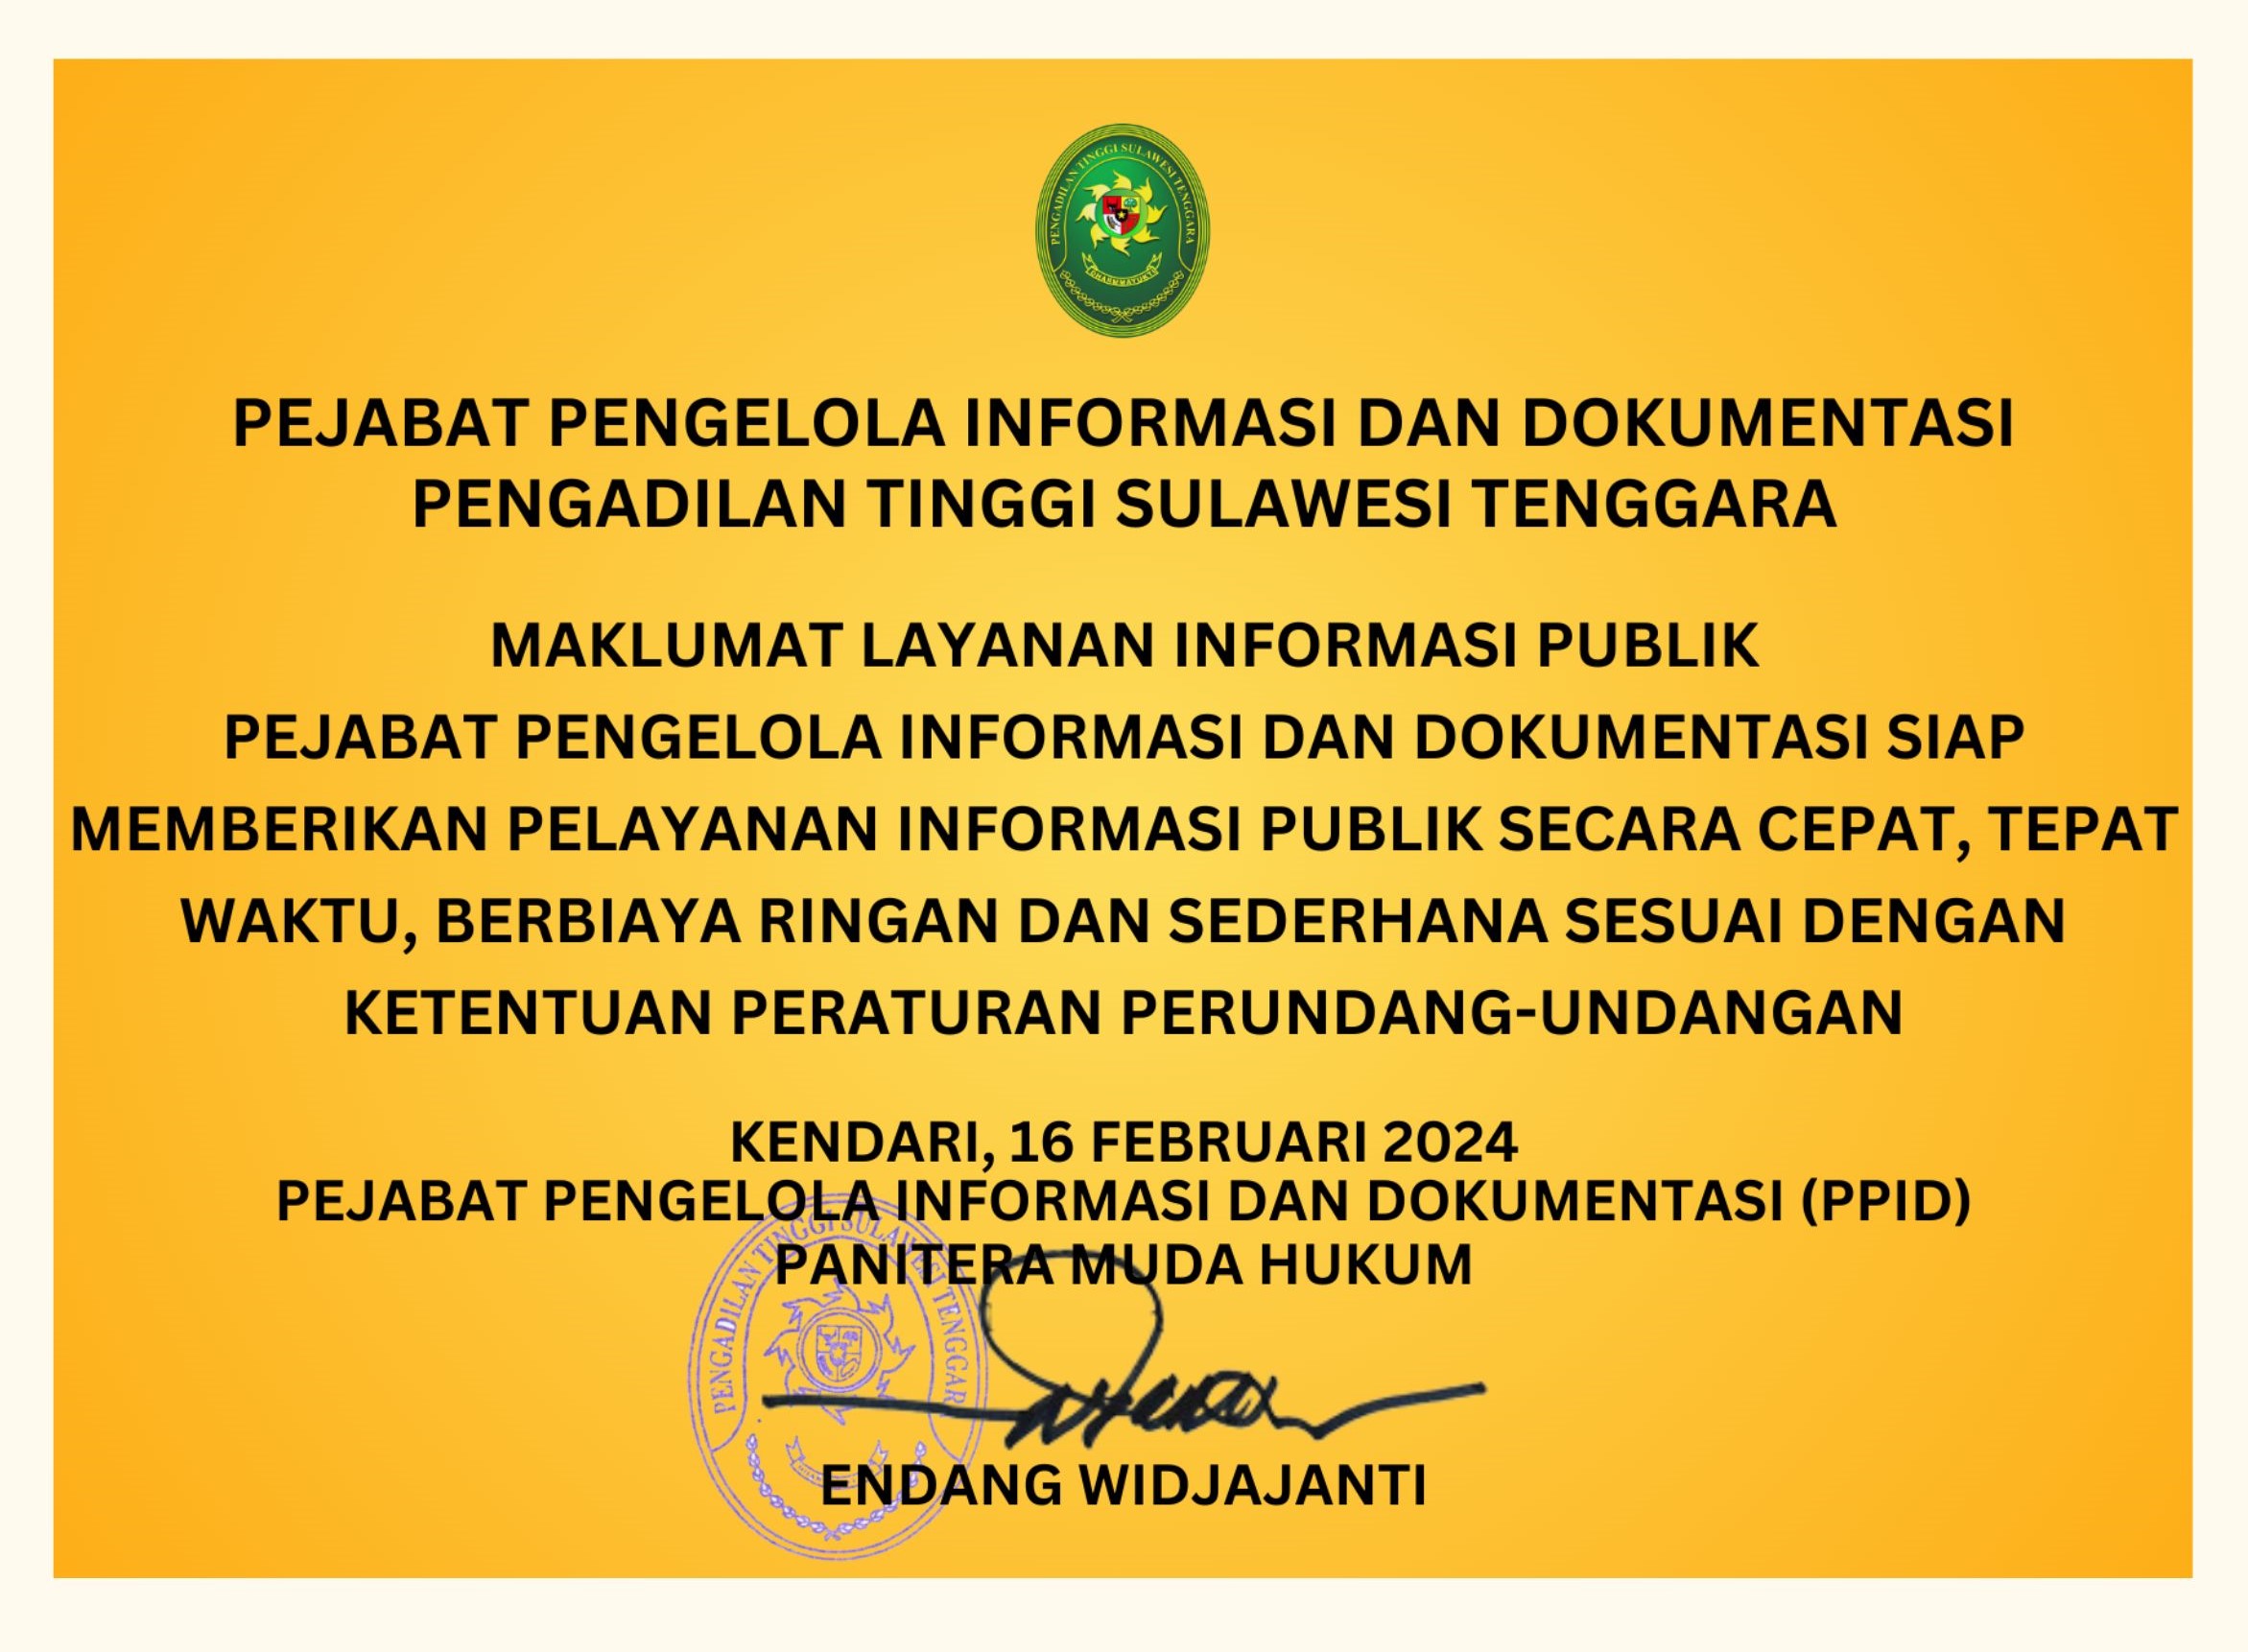 maklumat layanan informasi publik